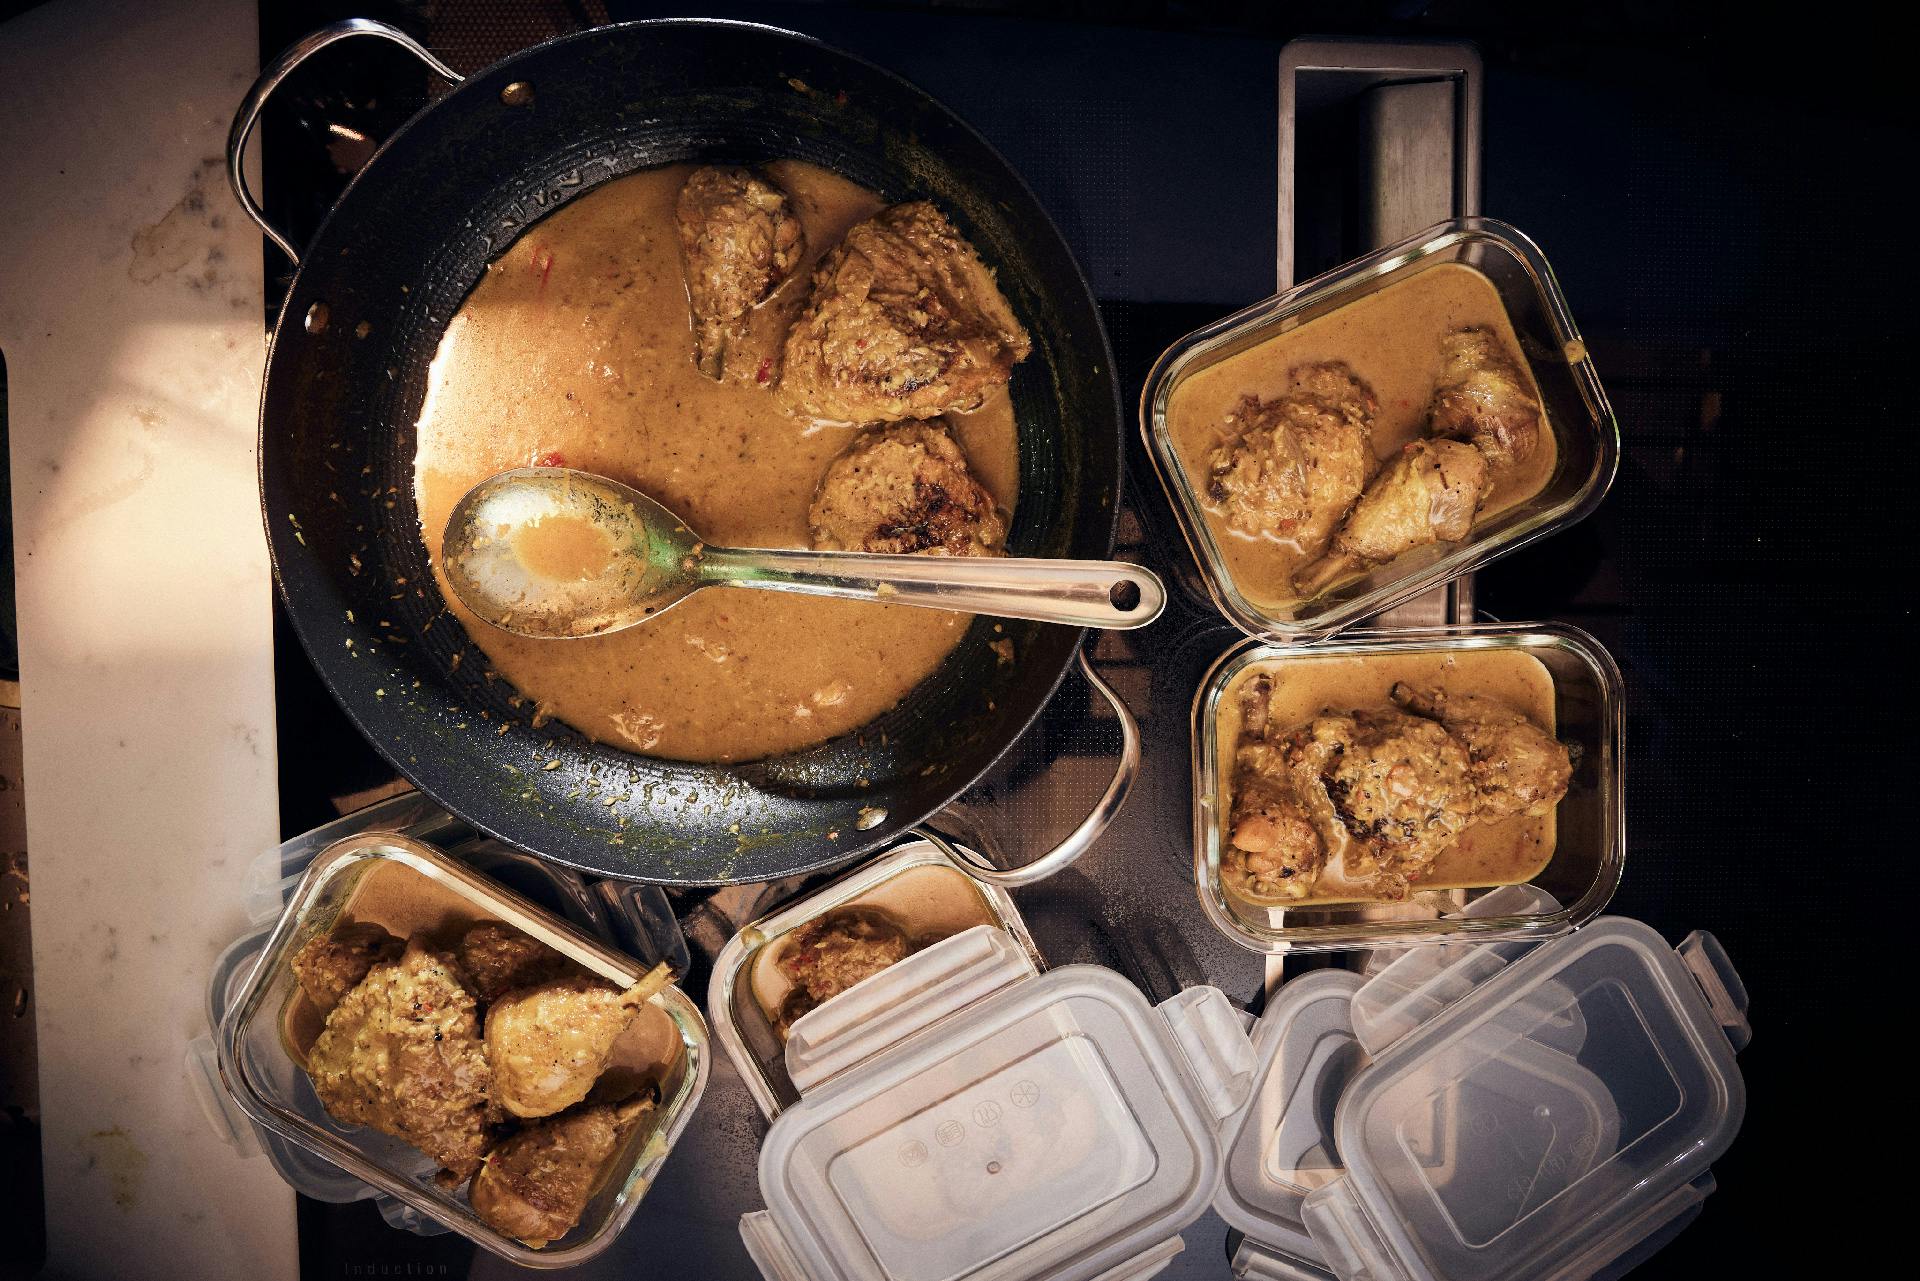 Rendang på kycklinglår (indonesisk curry)